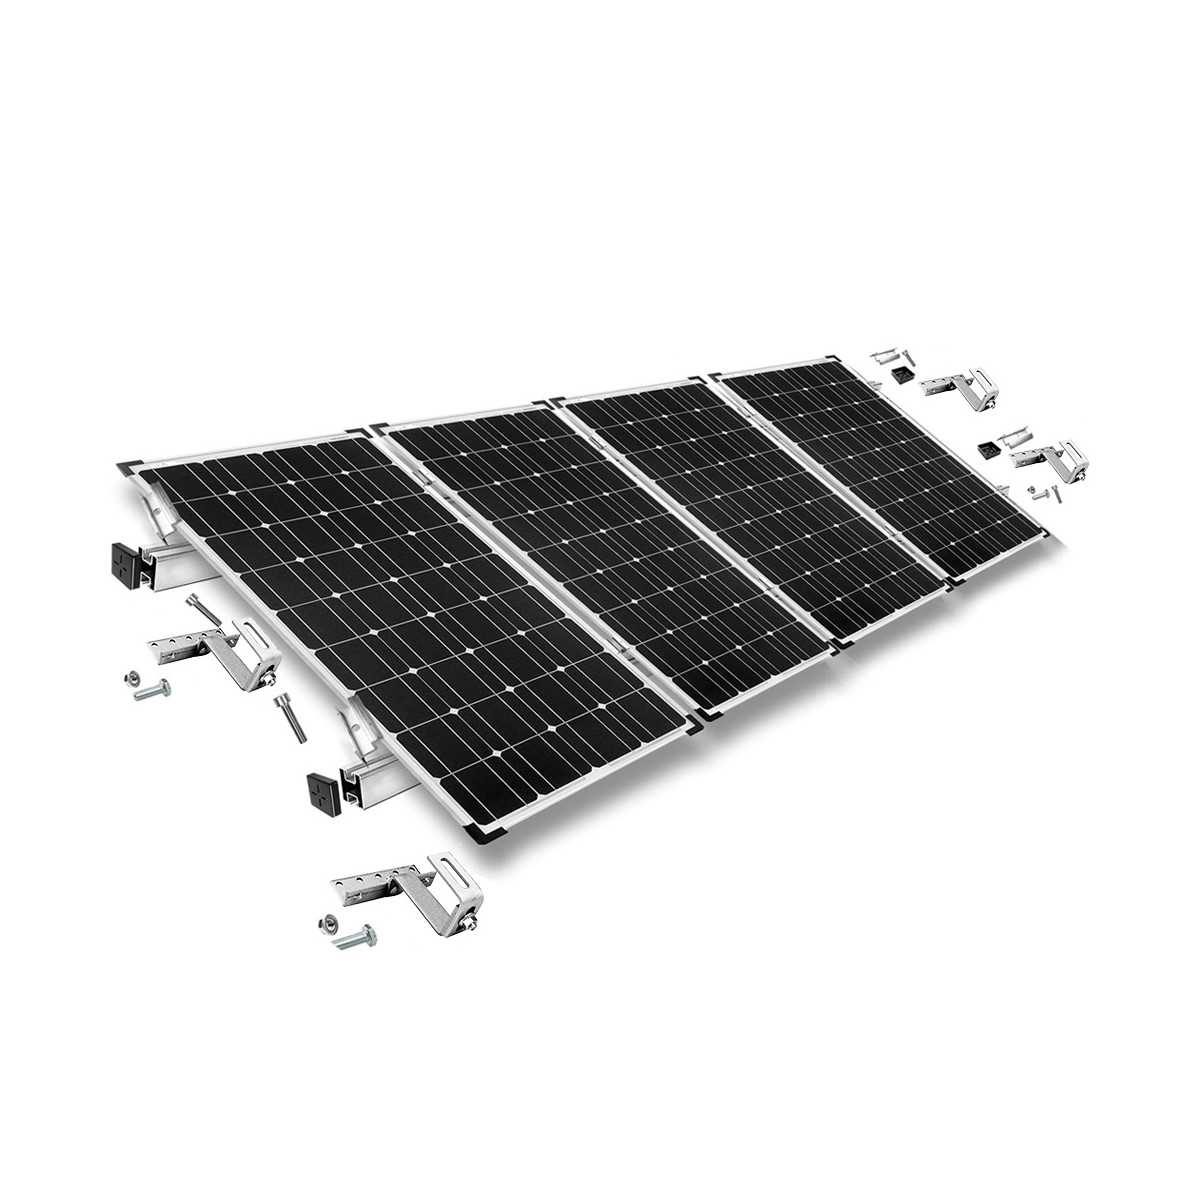 Kit di montaggio h35 regolabile con staffe per tetto (per tegole) per tetto inclinato 4 pannelli solari frame 35 mm